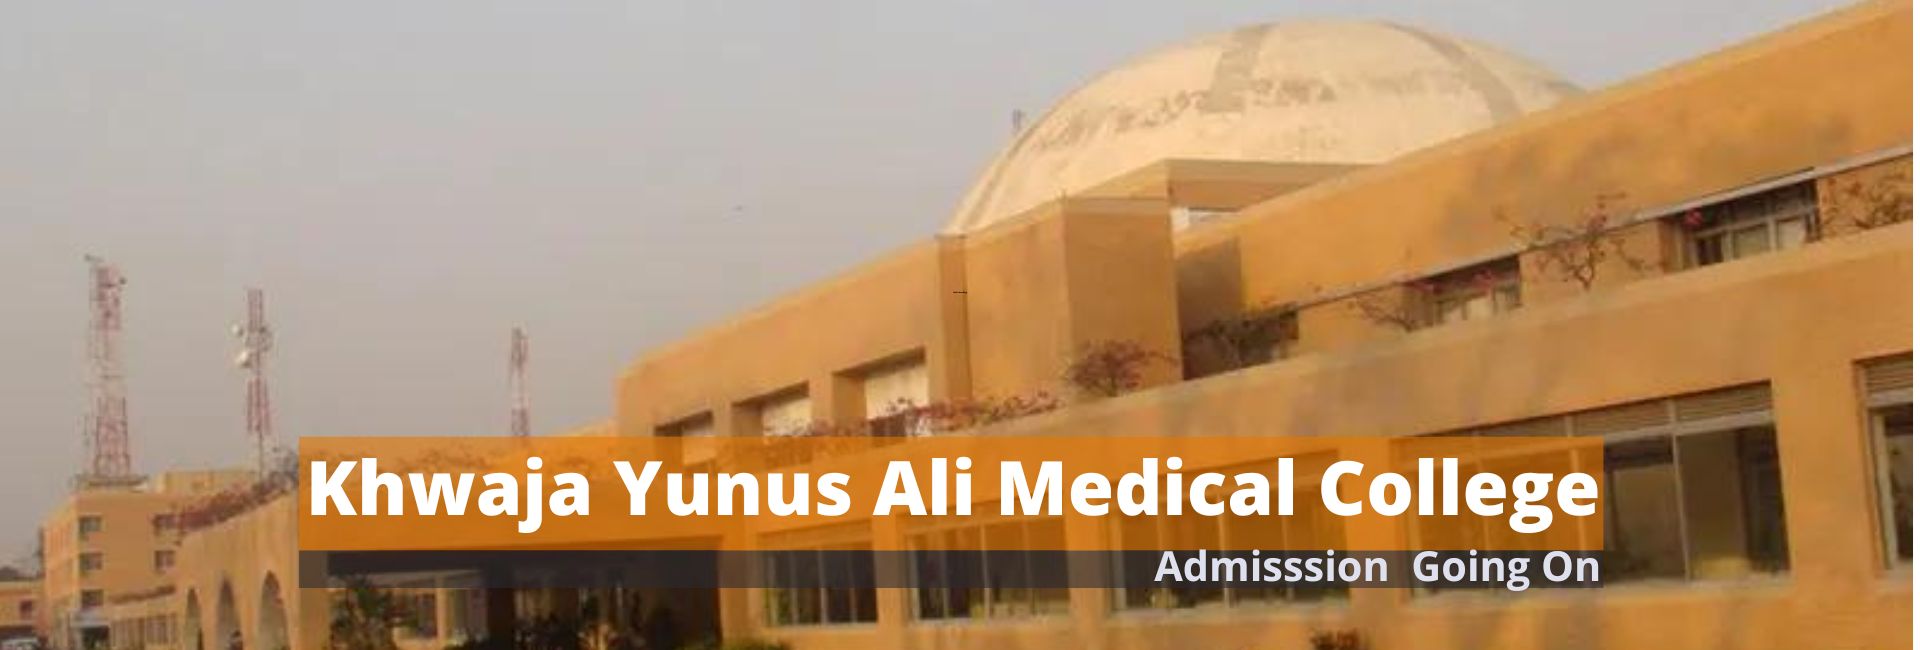 Khwaja Yunus Ali Medical College